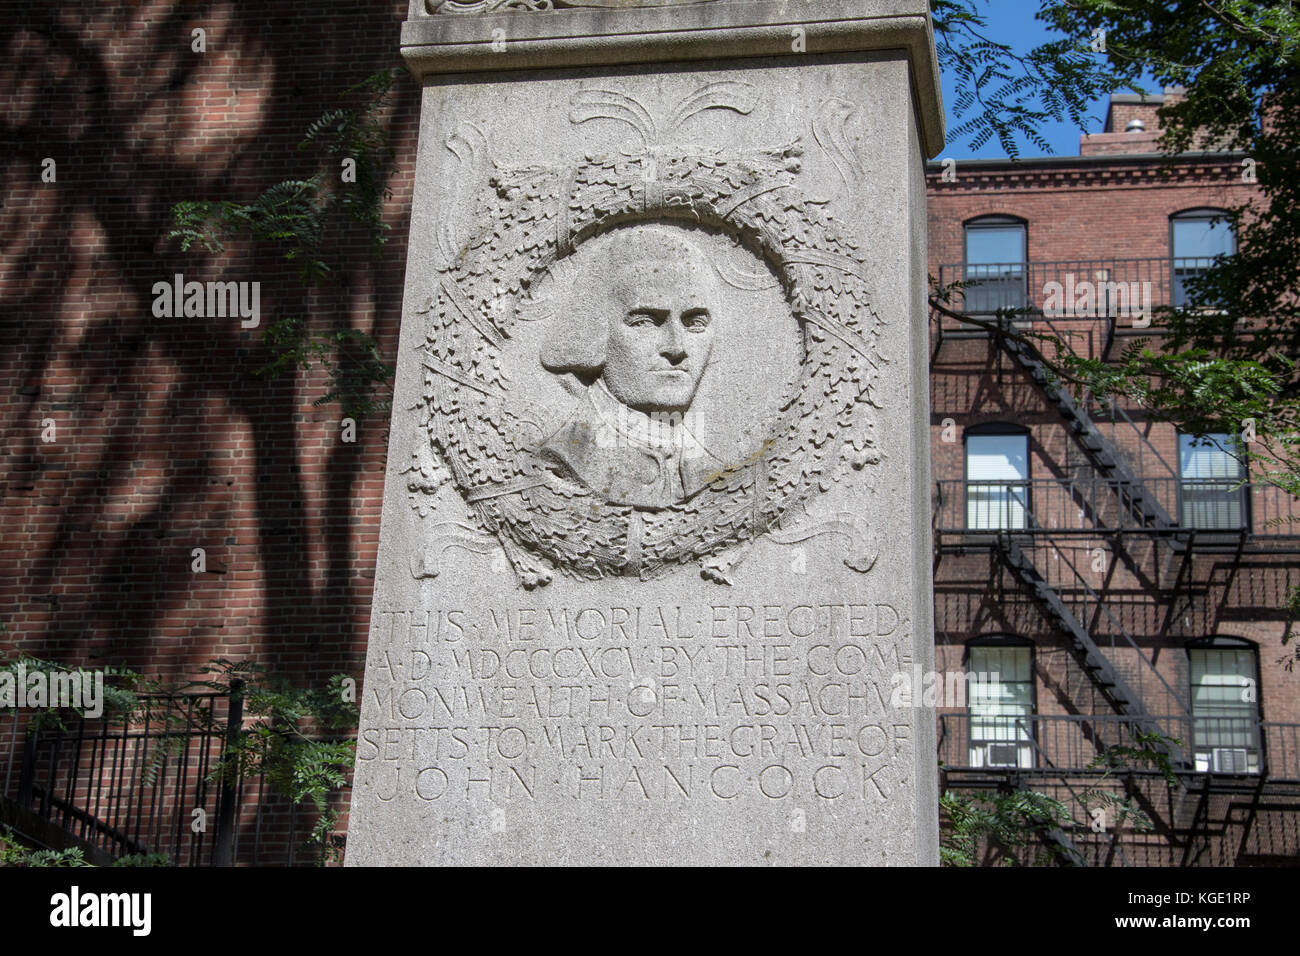 Lápida de John Hancock, granero enterrando a tierra, Boston, MA, EE.UU. Foto de stock